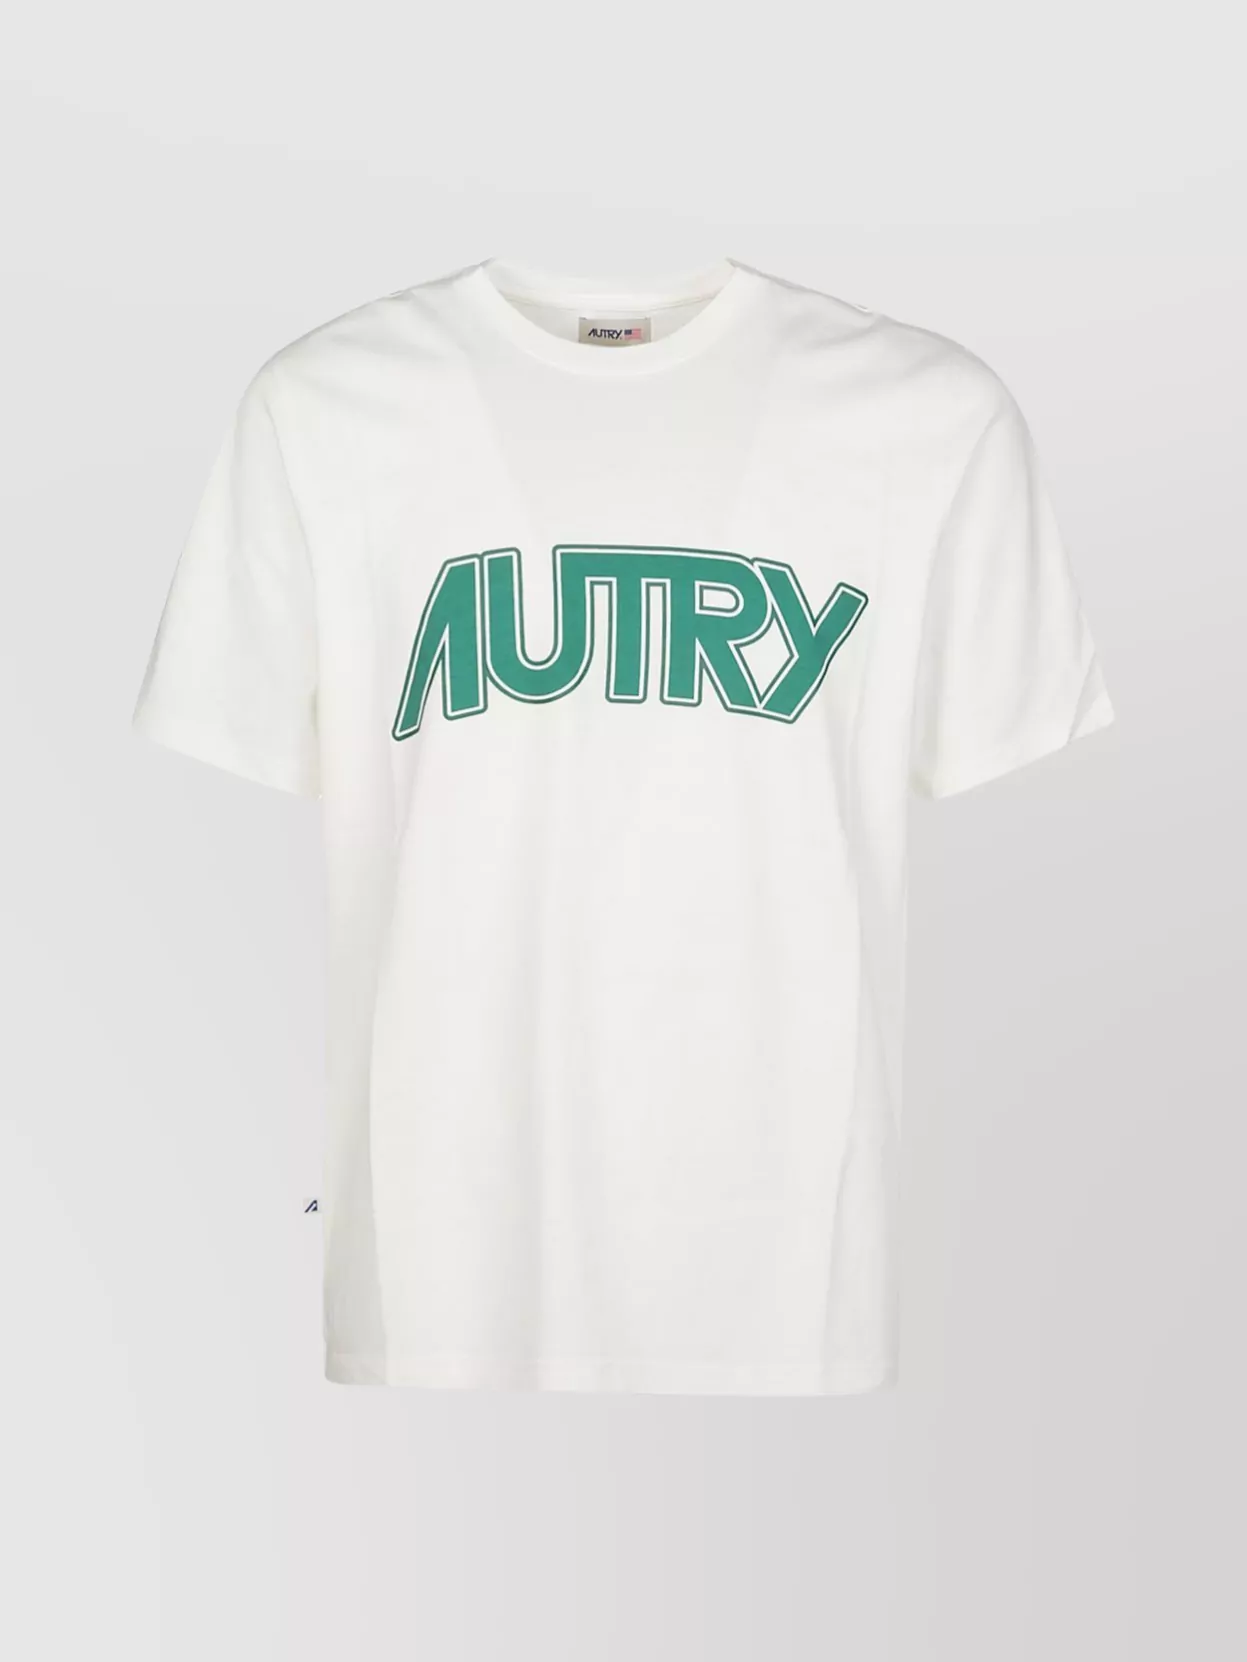 Shop Autry Men's Crew Neck T-shirt